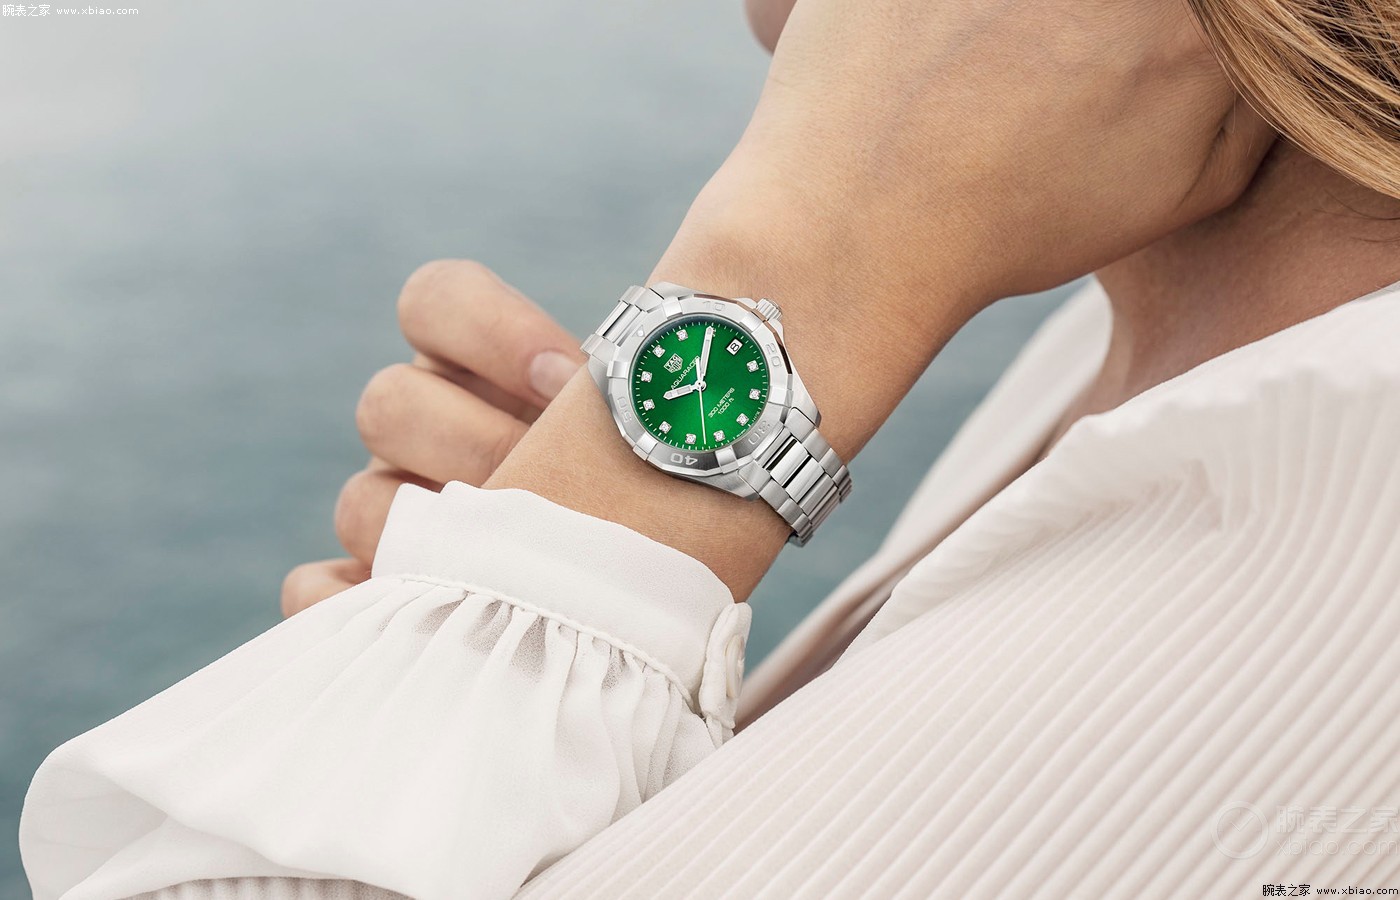 泰格豪雅竞潜系列两款新品翡翠绿盘腕表缩略图